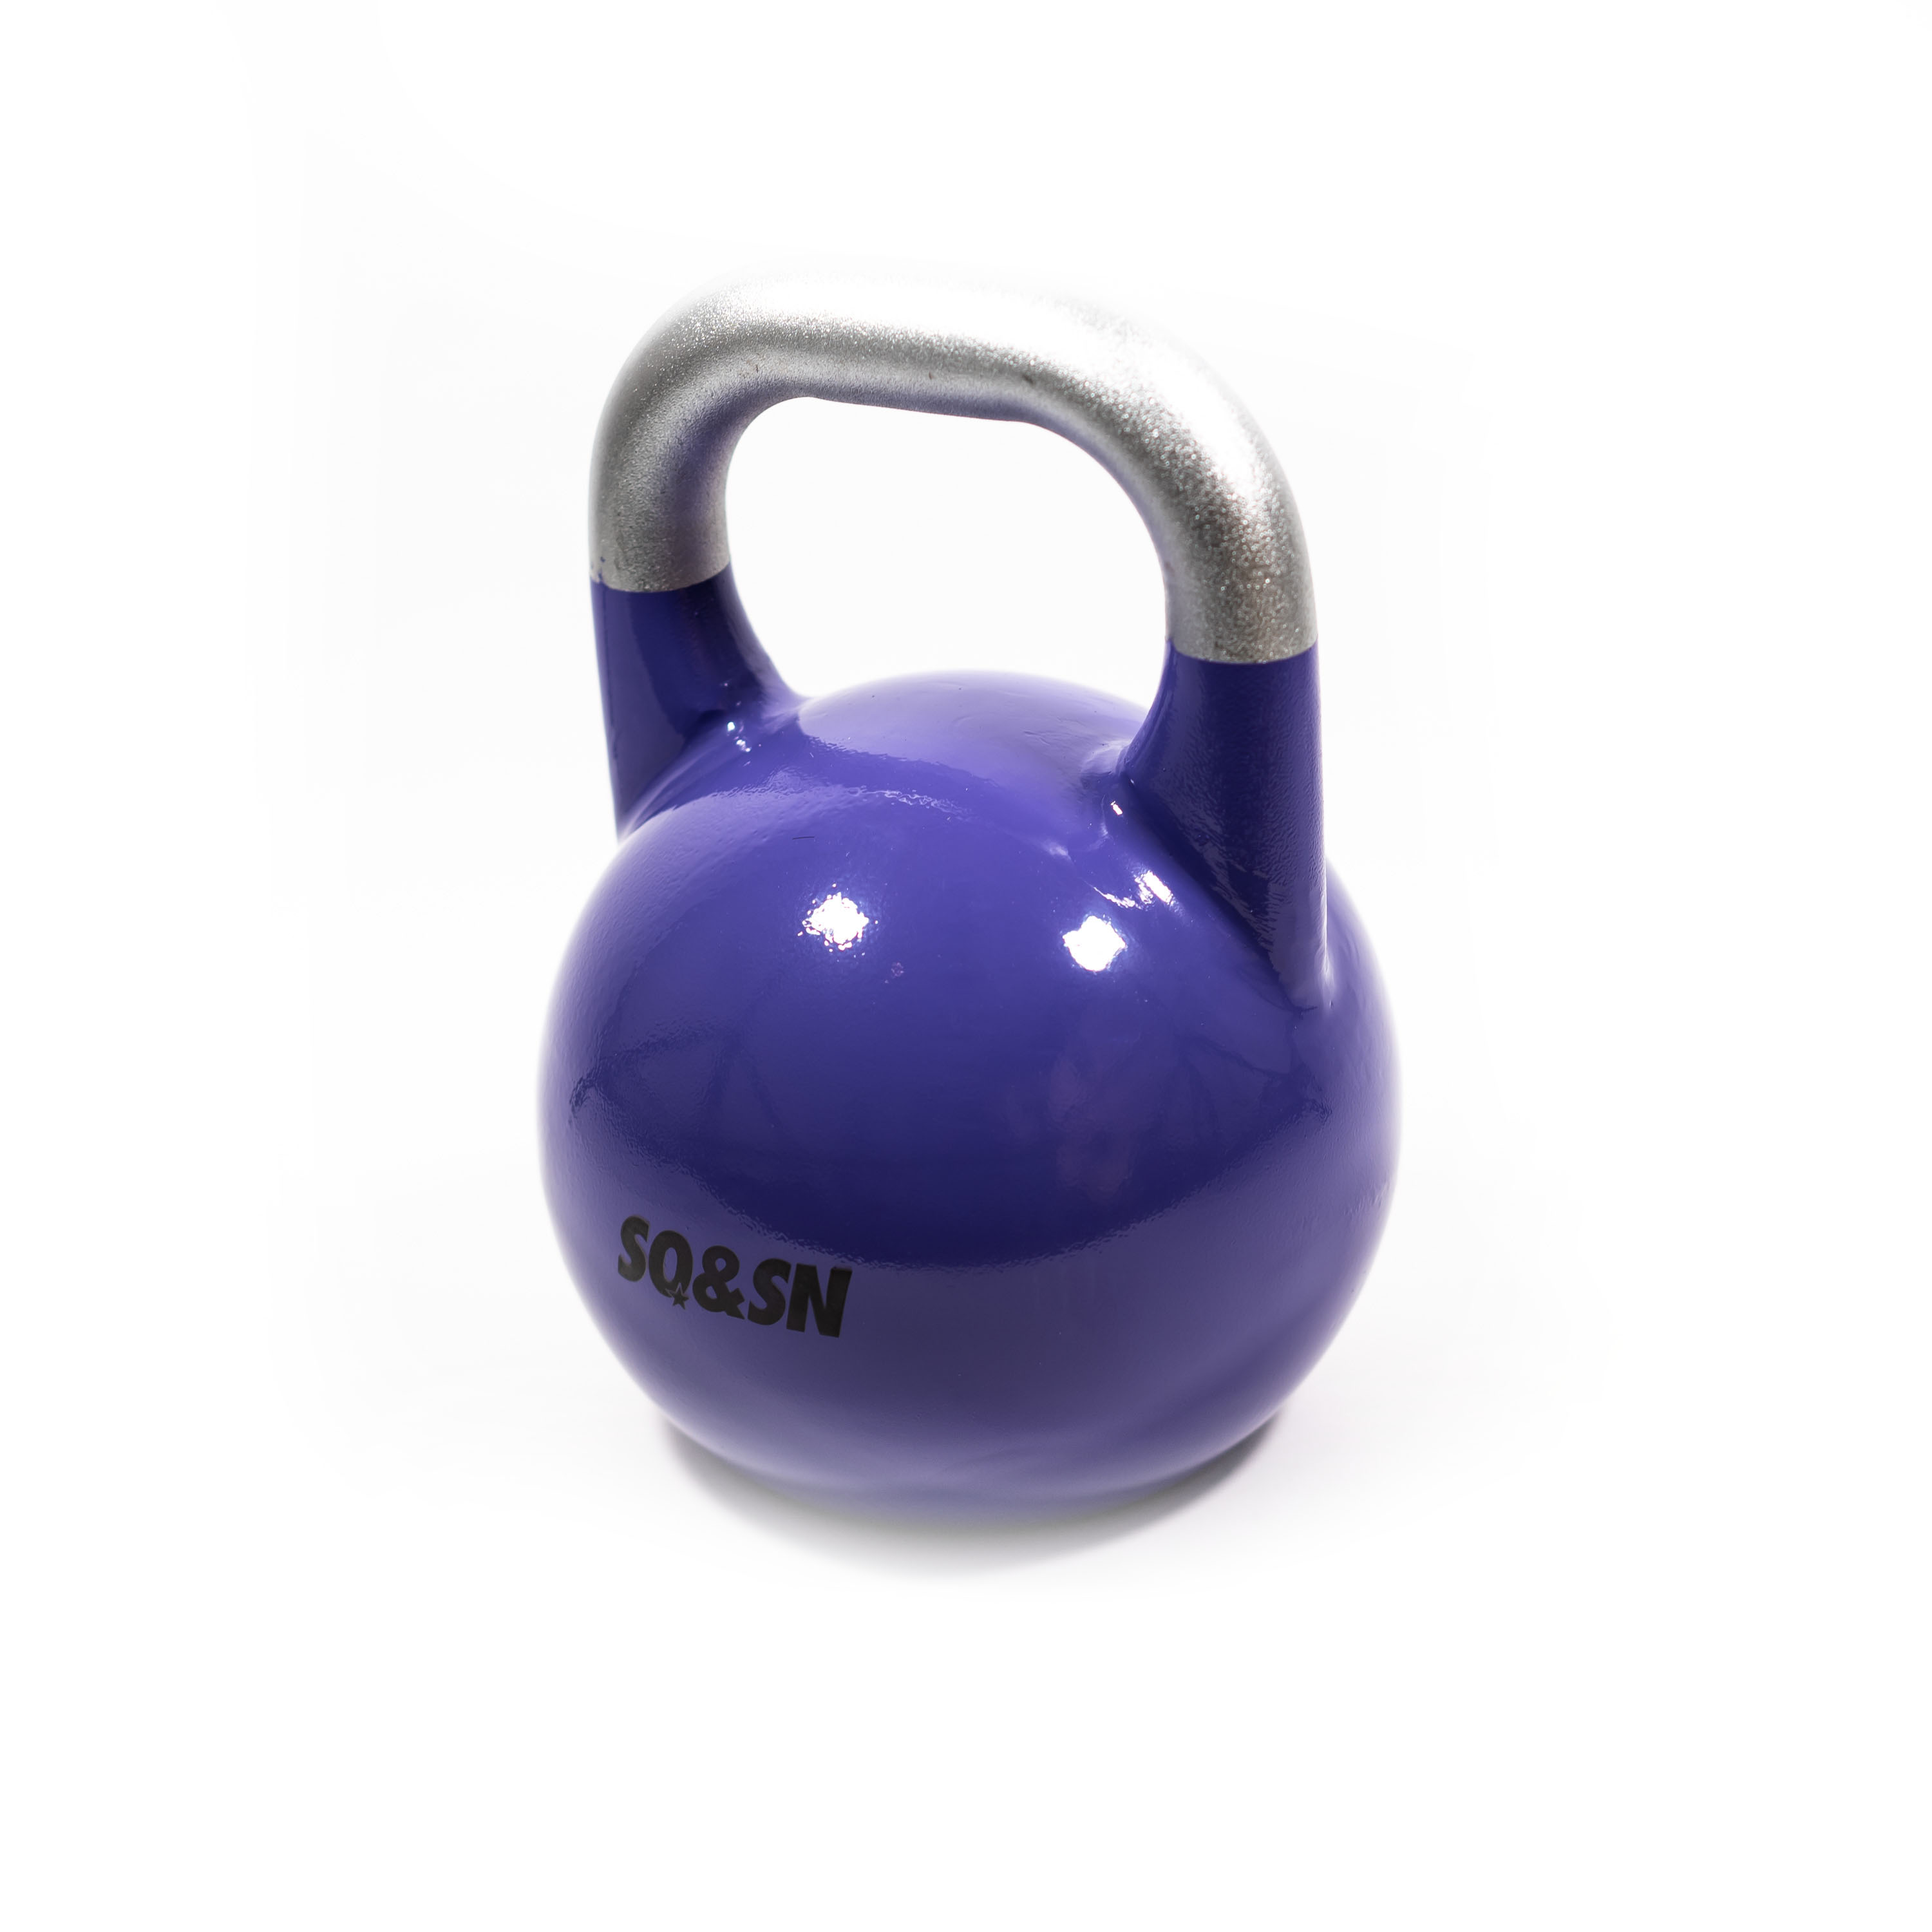 SQ&SN Competition Kettlebell (20 kg) i støbejern. Udstyr til crossfit træning, styrketræning og funktionel træning thumbnail